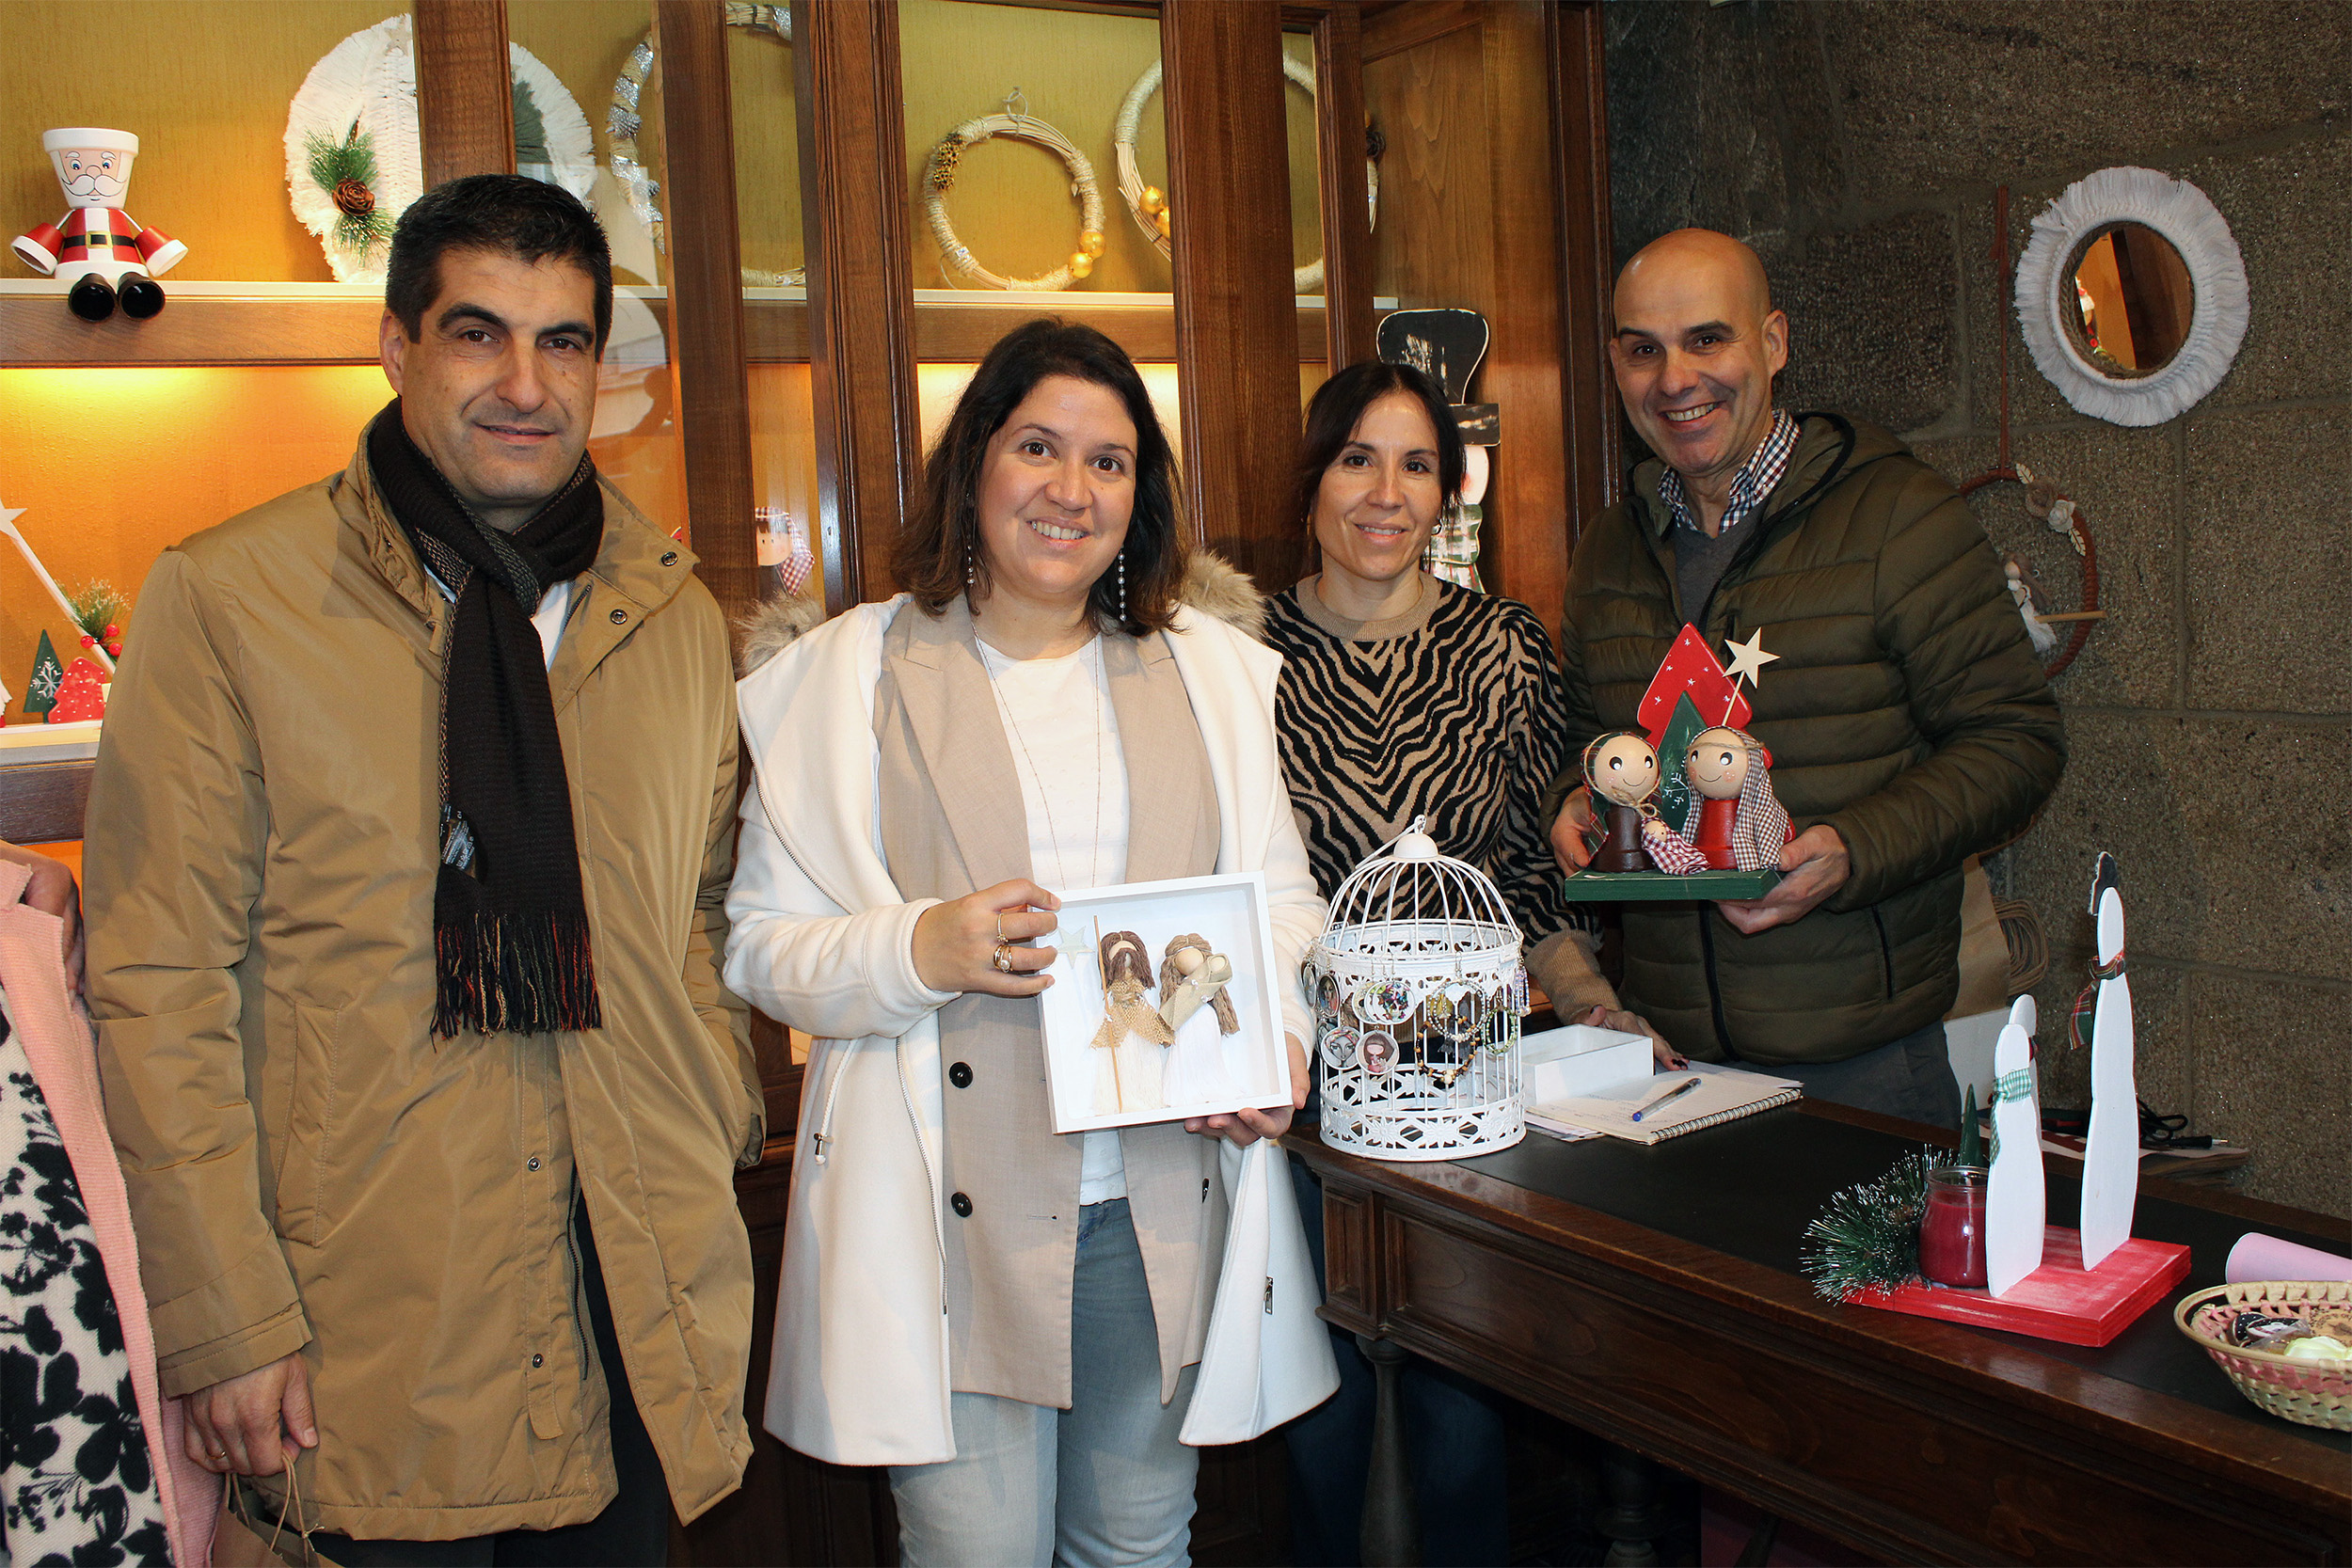 A Xunta destaca o compromiso social de Aspanas durante a visita ao seu mercado de Nadal en Ourense